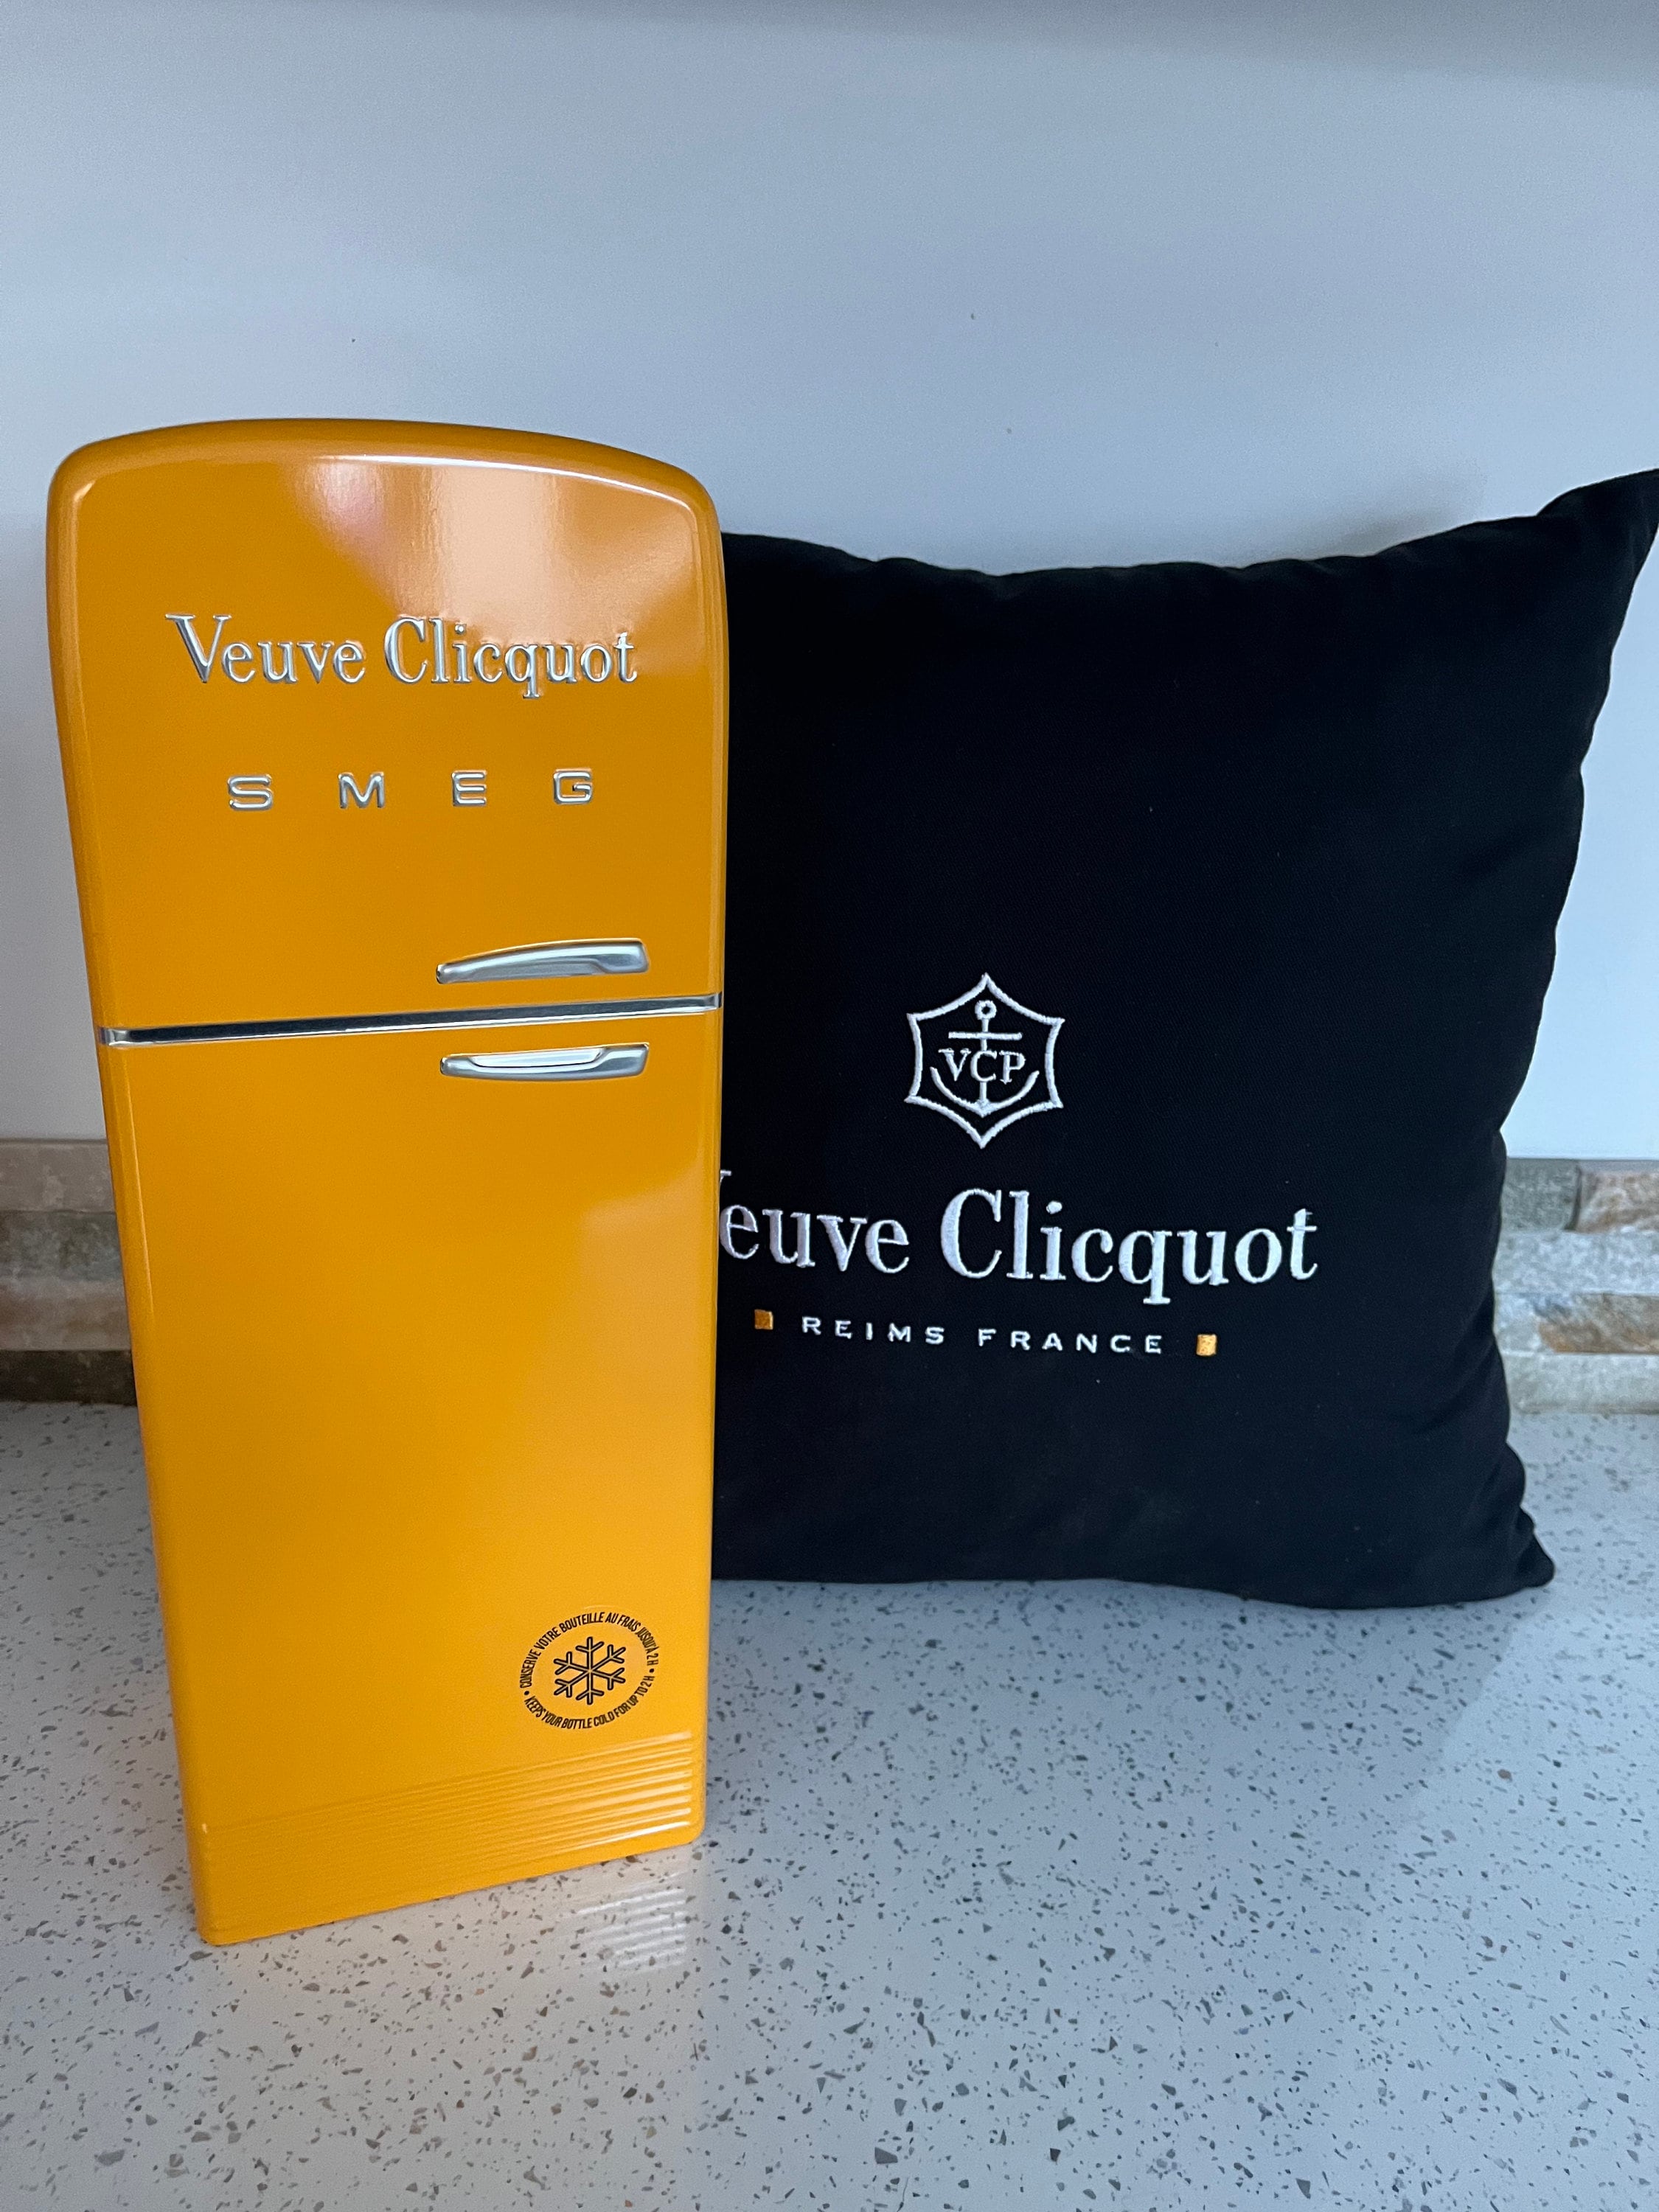 Veuve Clicquot Champagne Smeg Fridge Orange Bottle Cooler Case